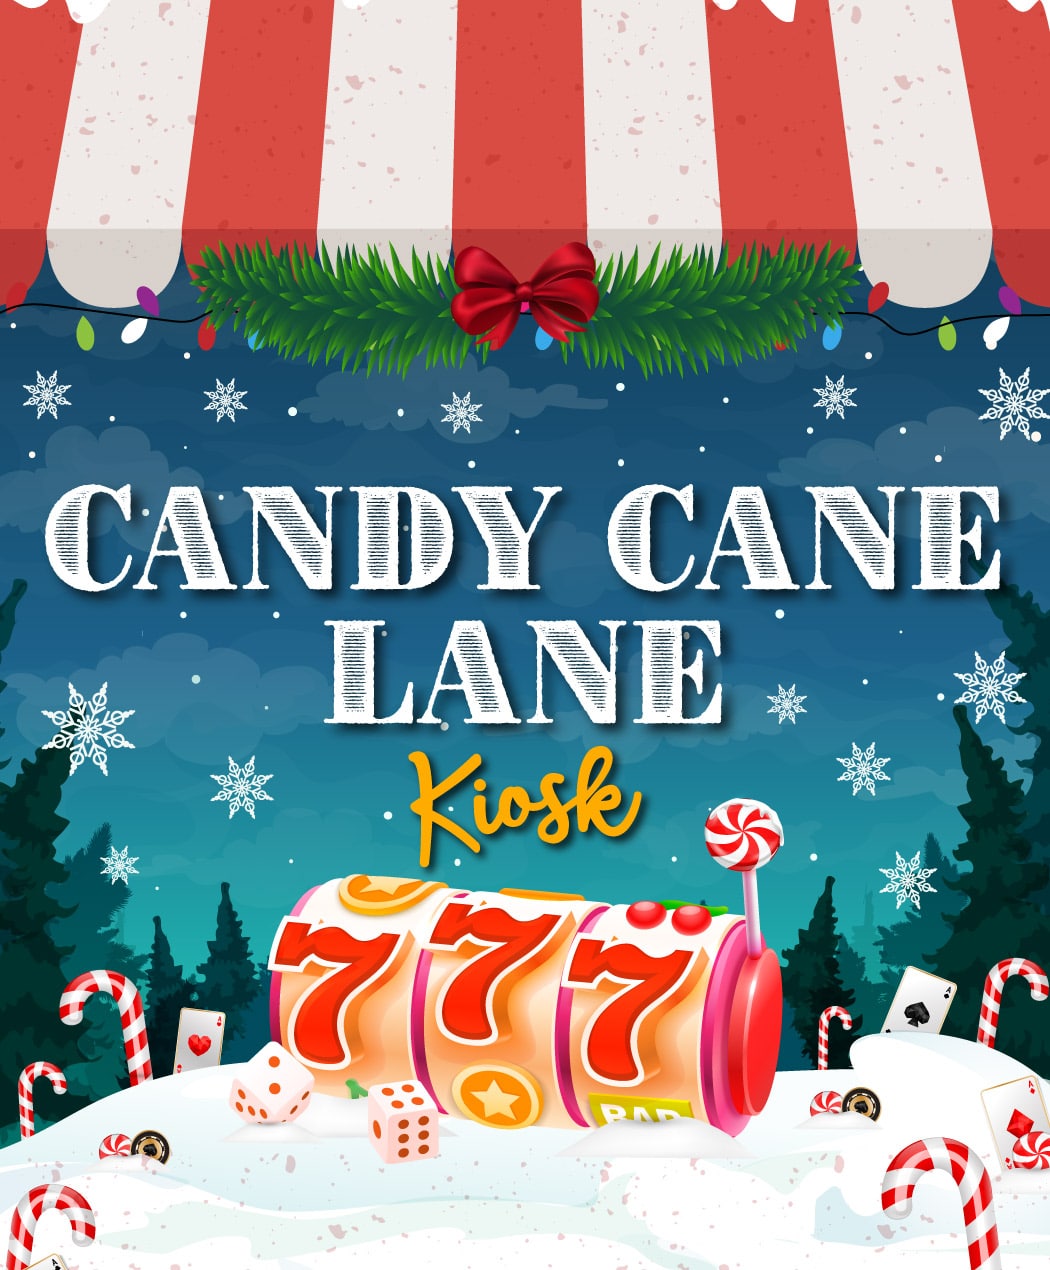 Candy Cane Lane Kiosk